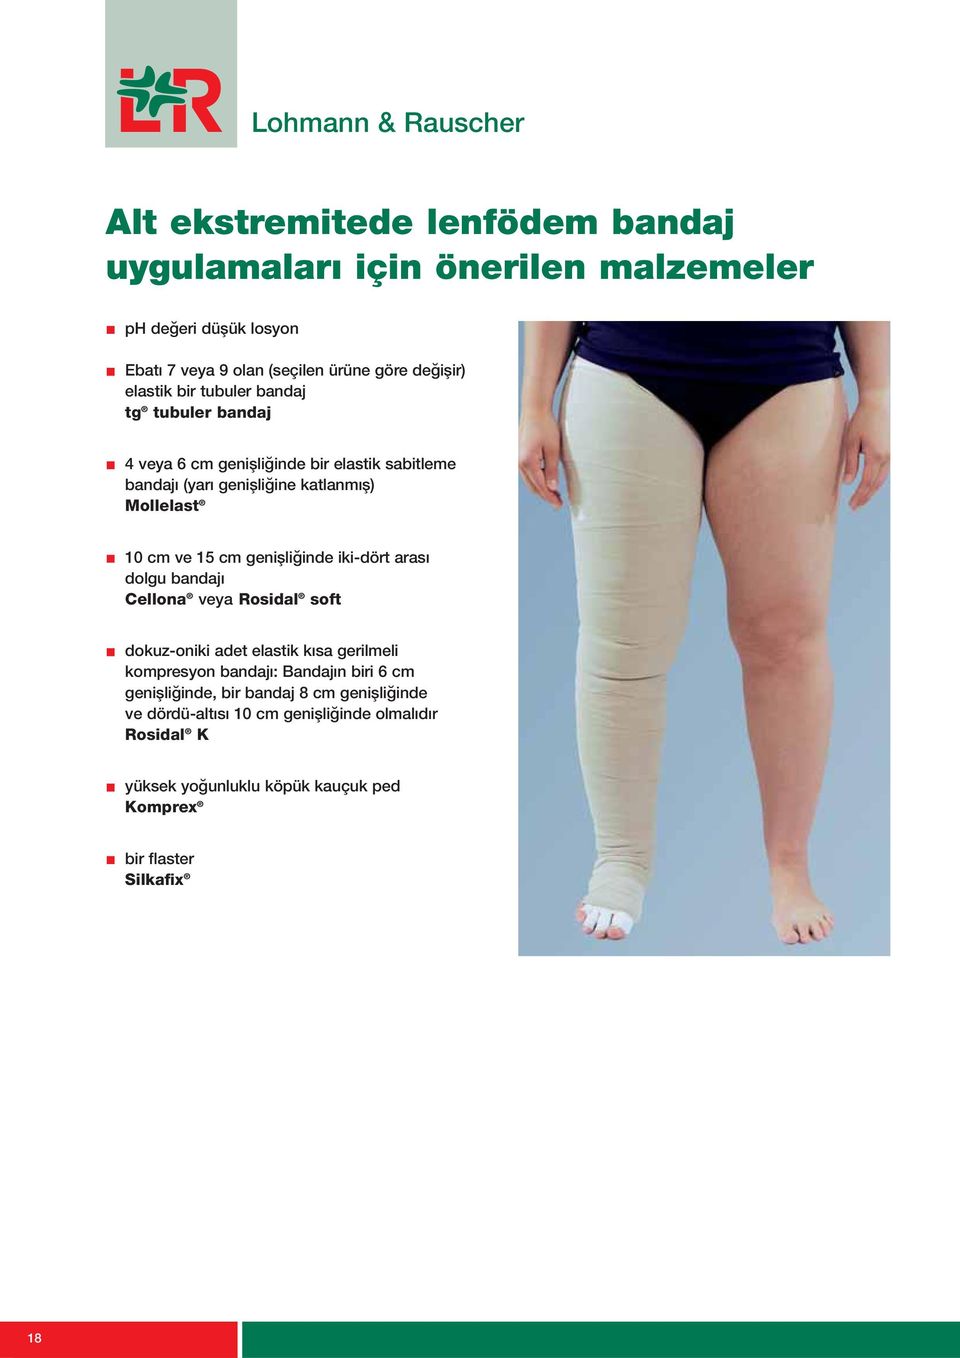 genisļigĭnde iki-dört arası dolgu bandajı Cellona veya Rosidal soft dokuz-oniki adet elastik kısa gerilmeli kompresyon bandajı: Bandajın biri 6 cm